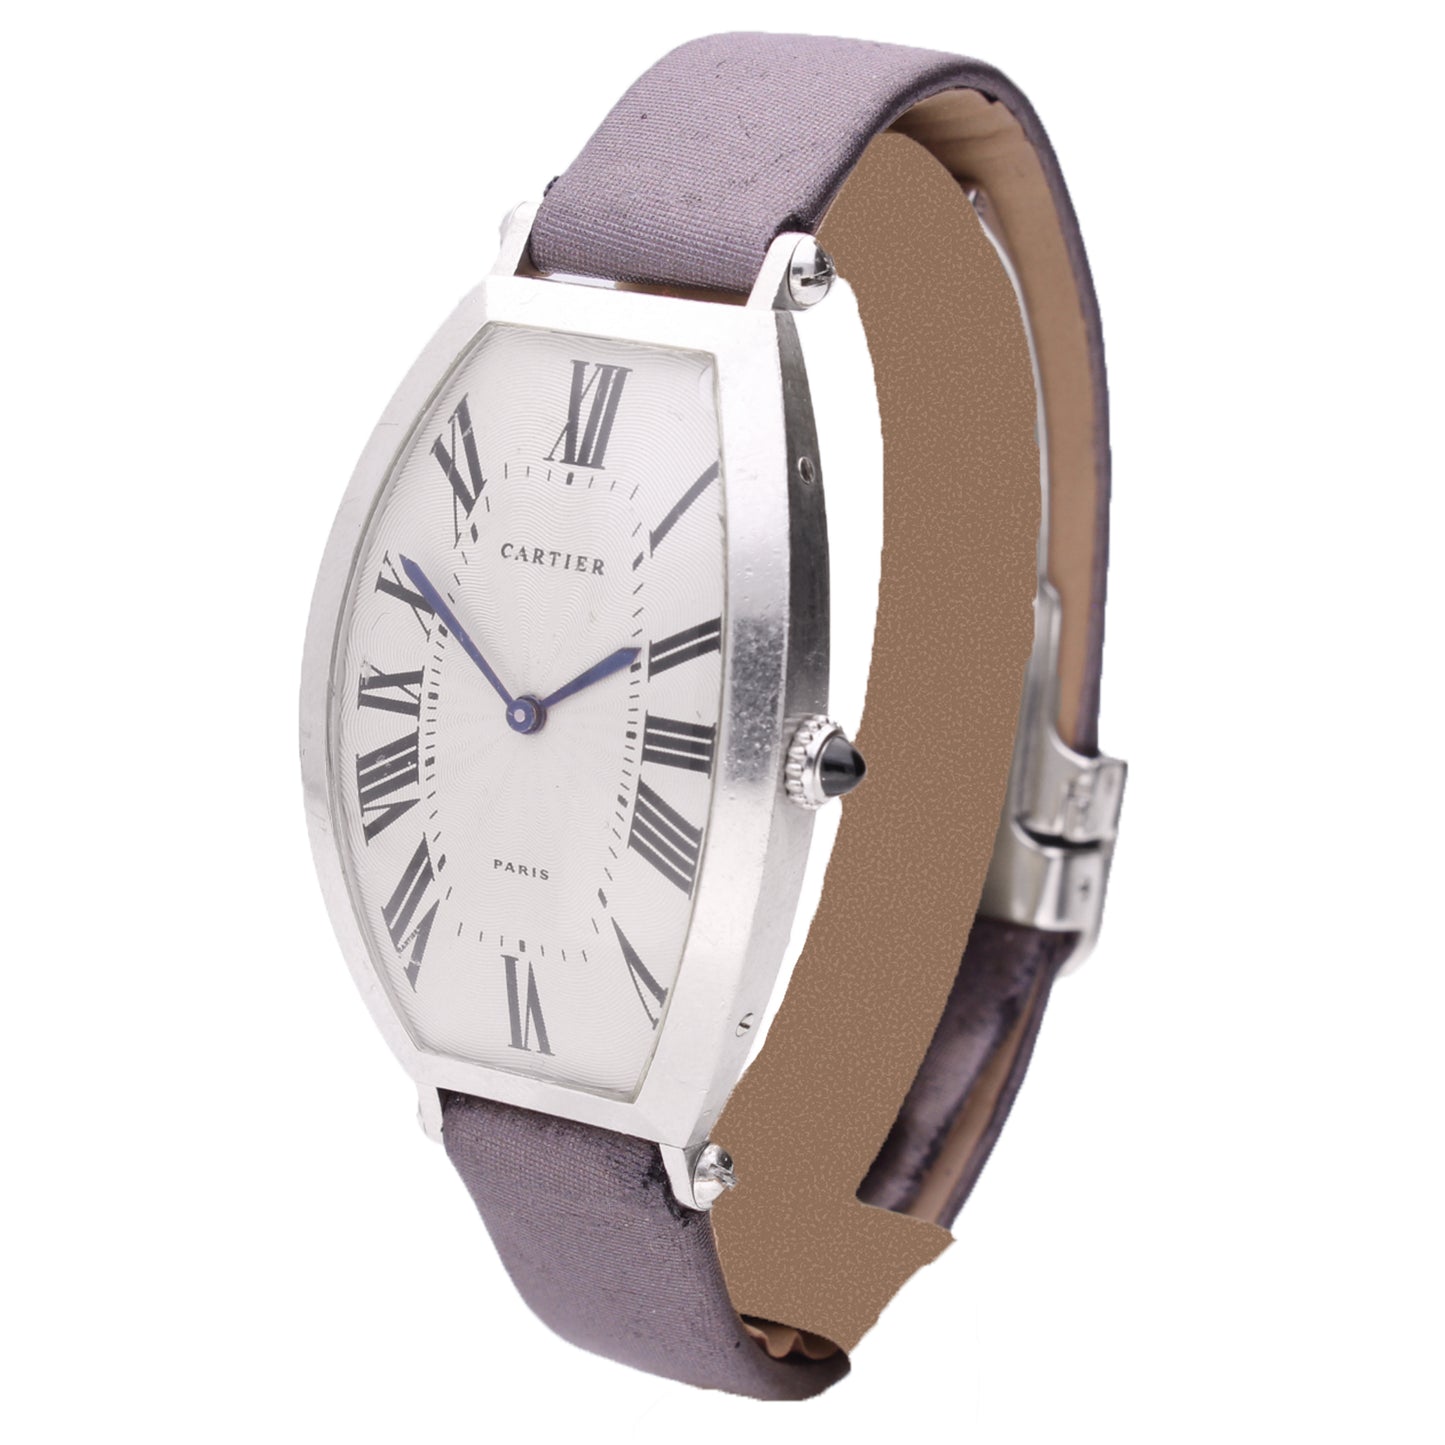 Platinum Cartier "Tonneau" wristwatch. Made 1990's